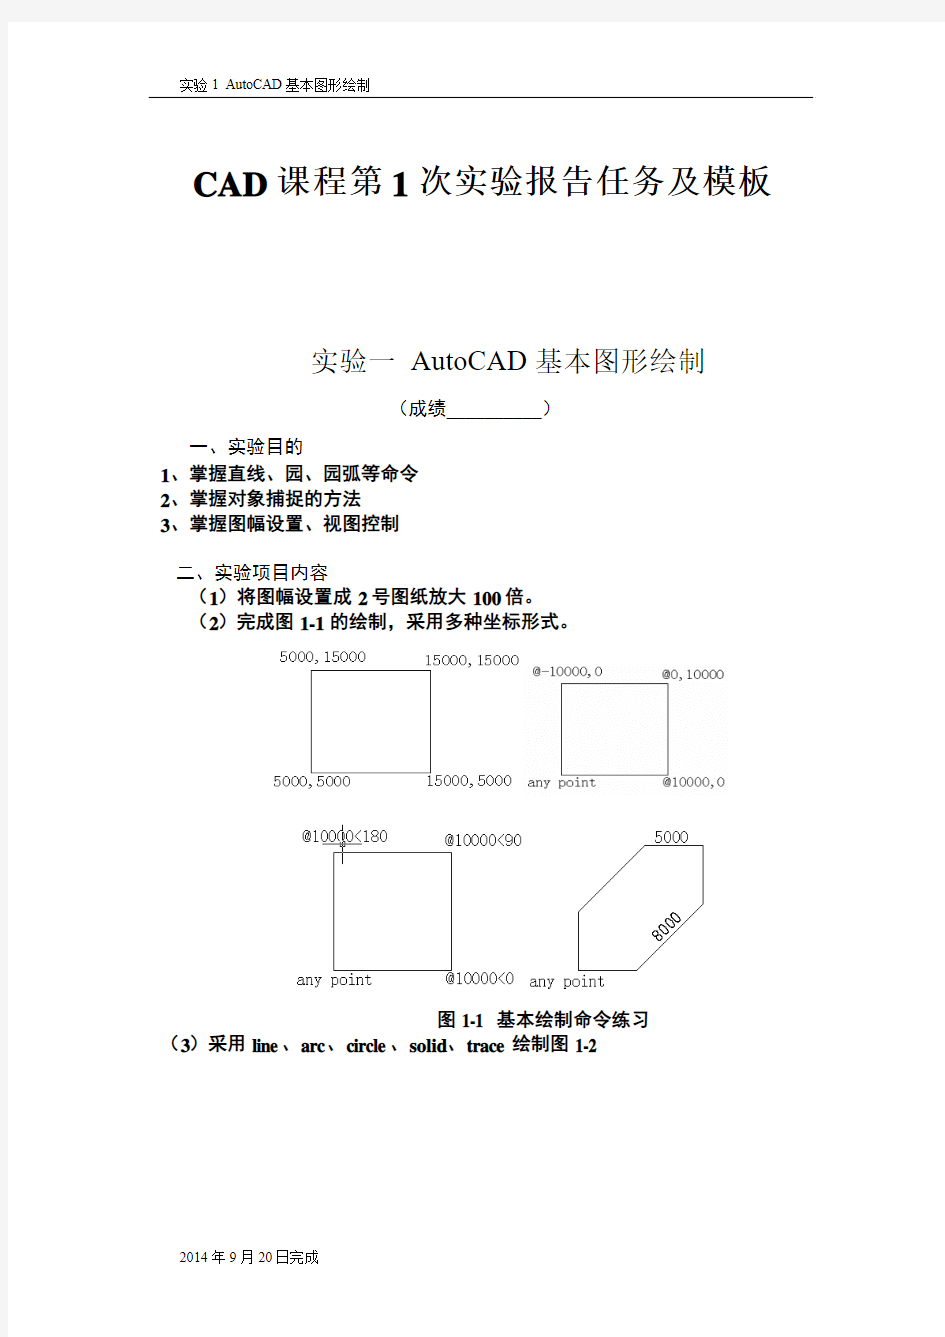 重庆大学CAD实验报告1